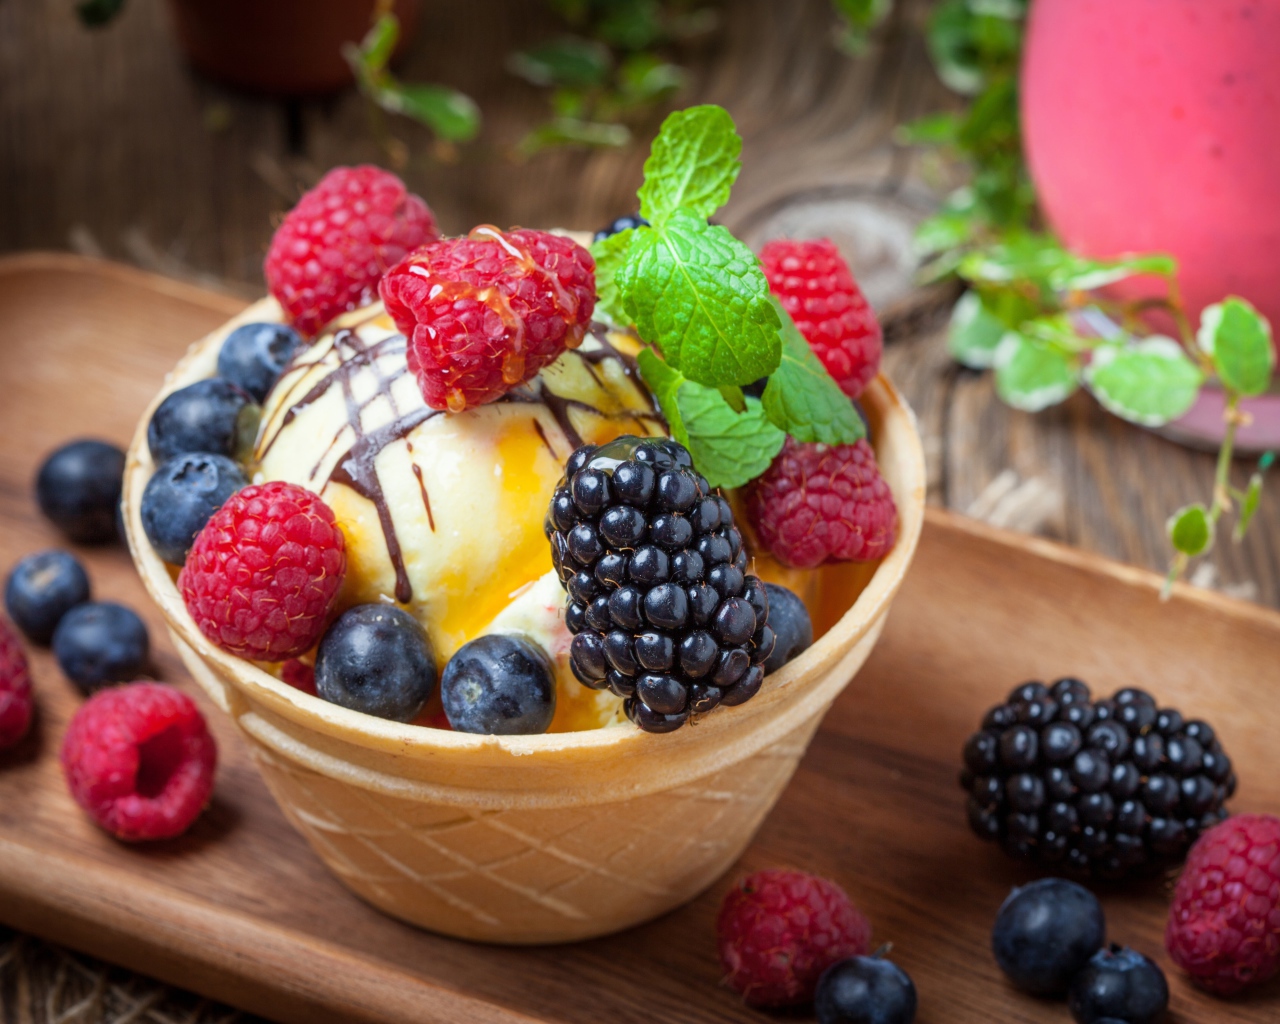 Мороженое в вафельном стаканчике со свежими фруктами 